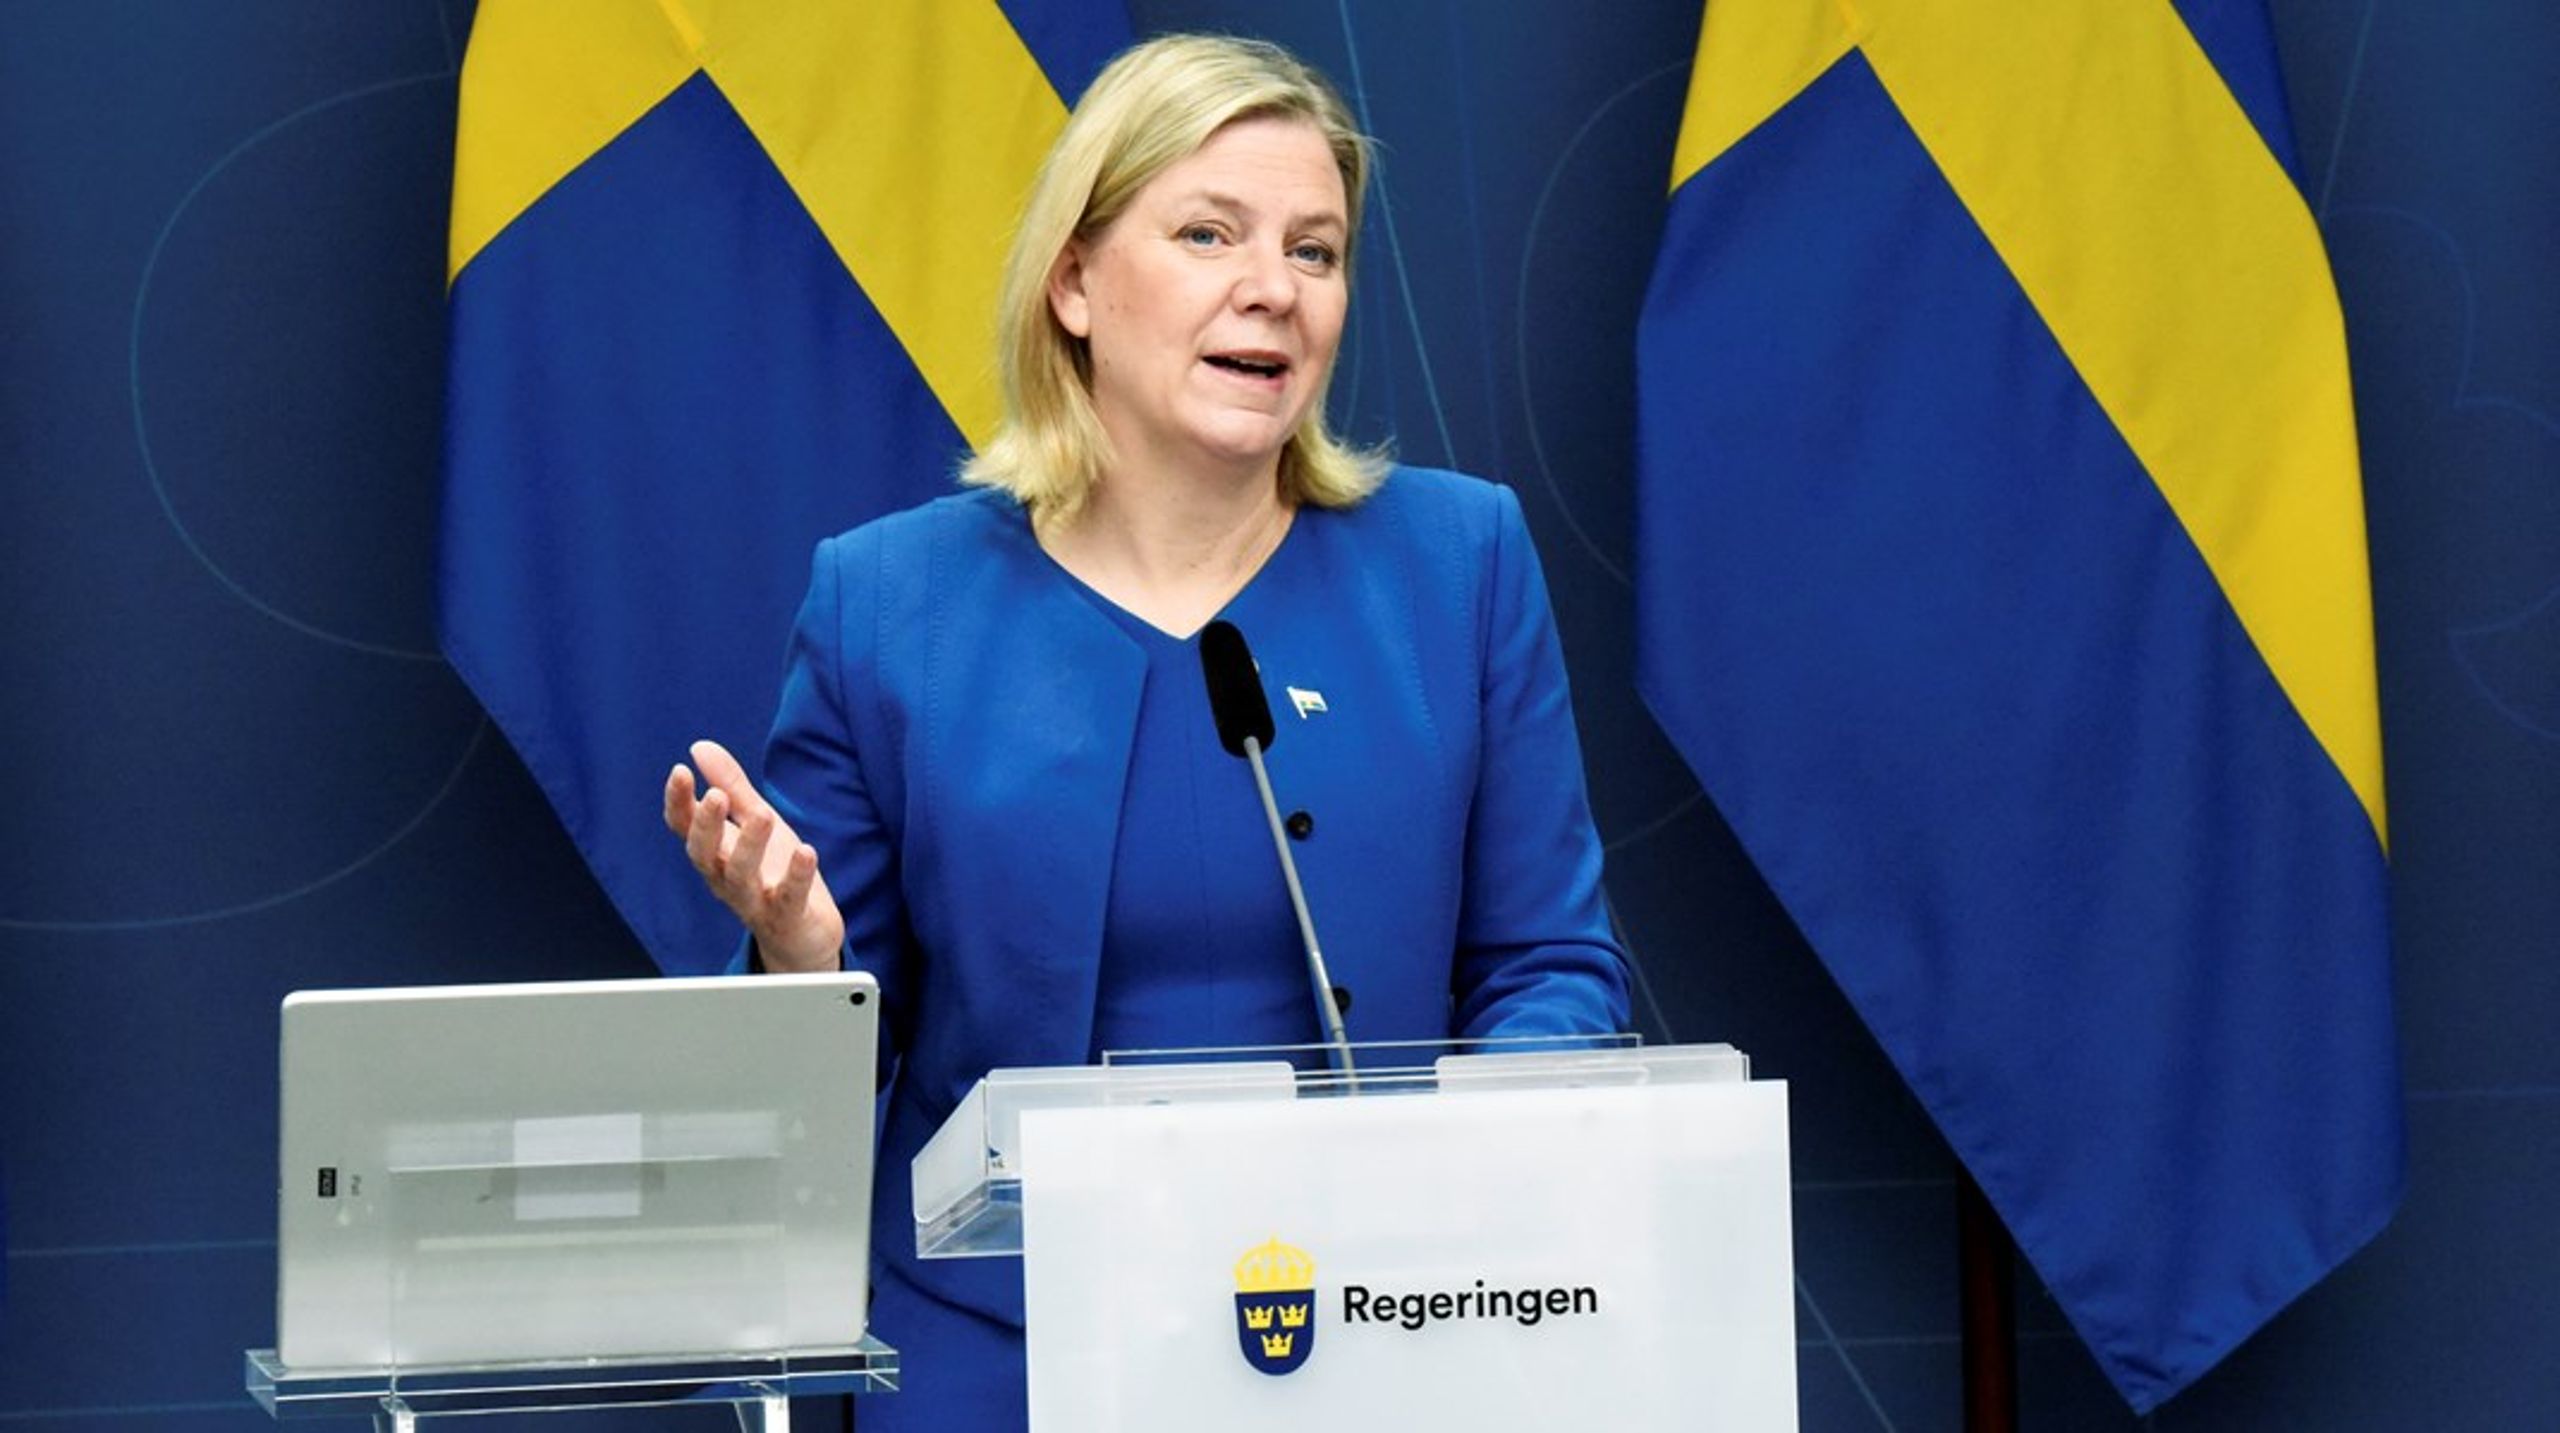 Vi hoppas att&nbsp;Magdalena Andersson som statsminister är villig att stå upp och stötta oss i vår kamp för inkludering, skriver debattörerna.